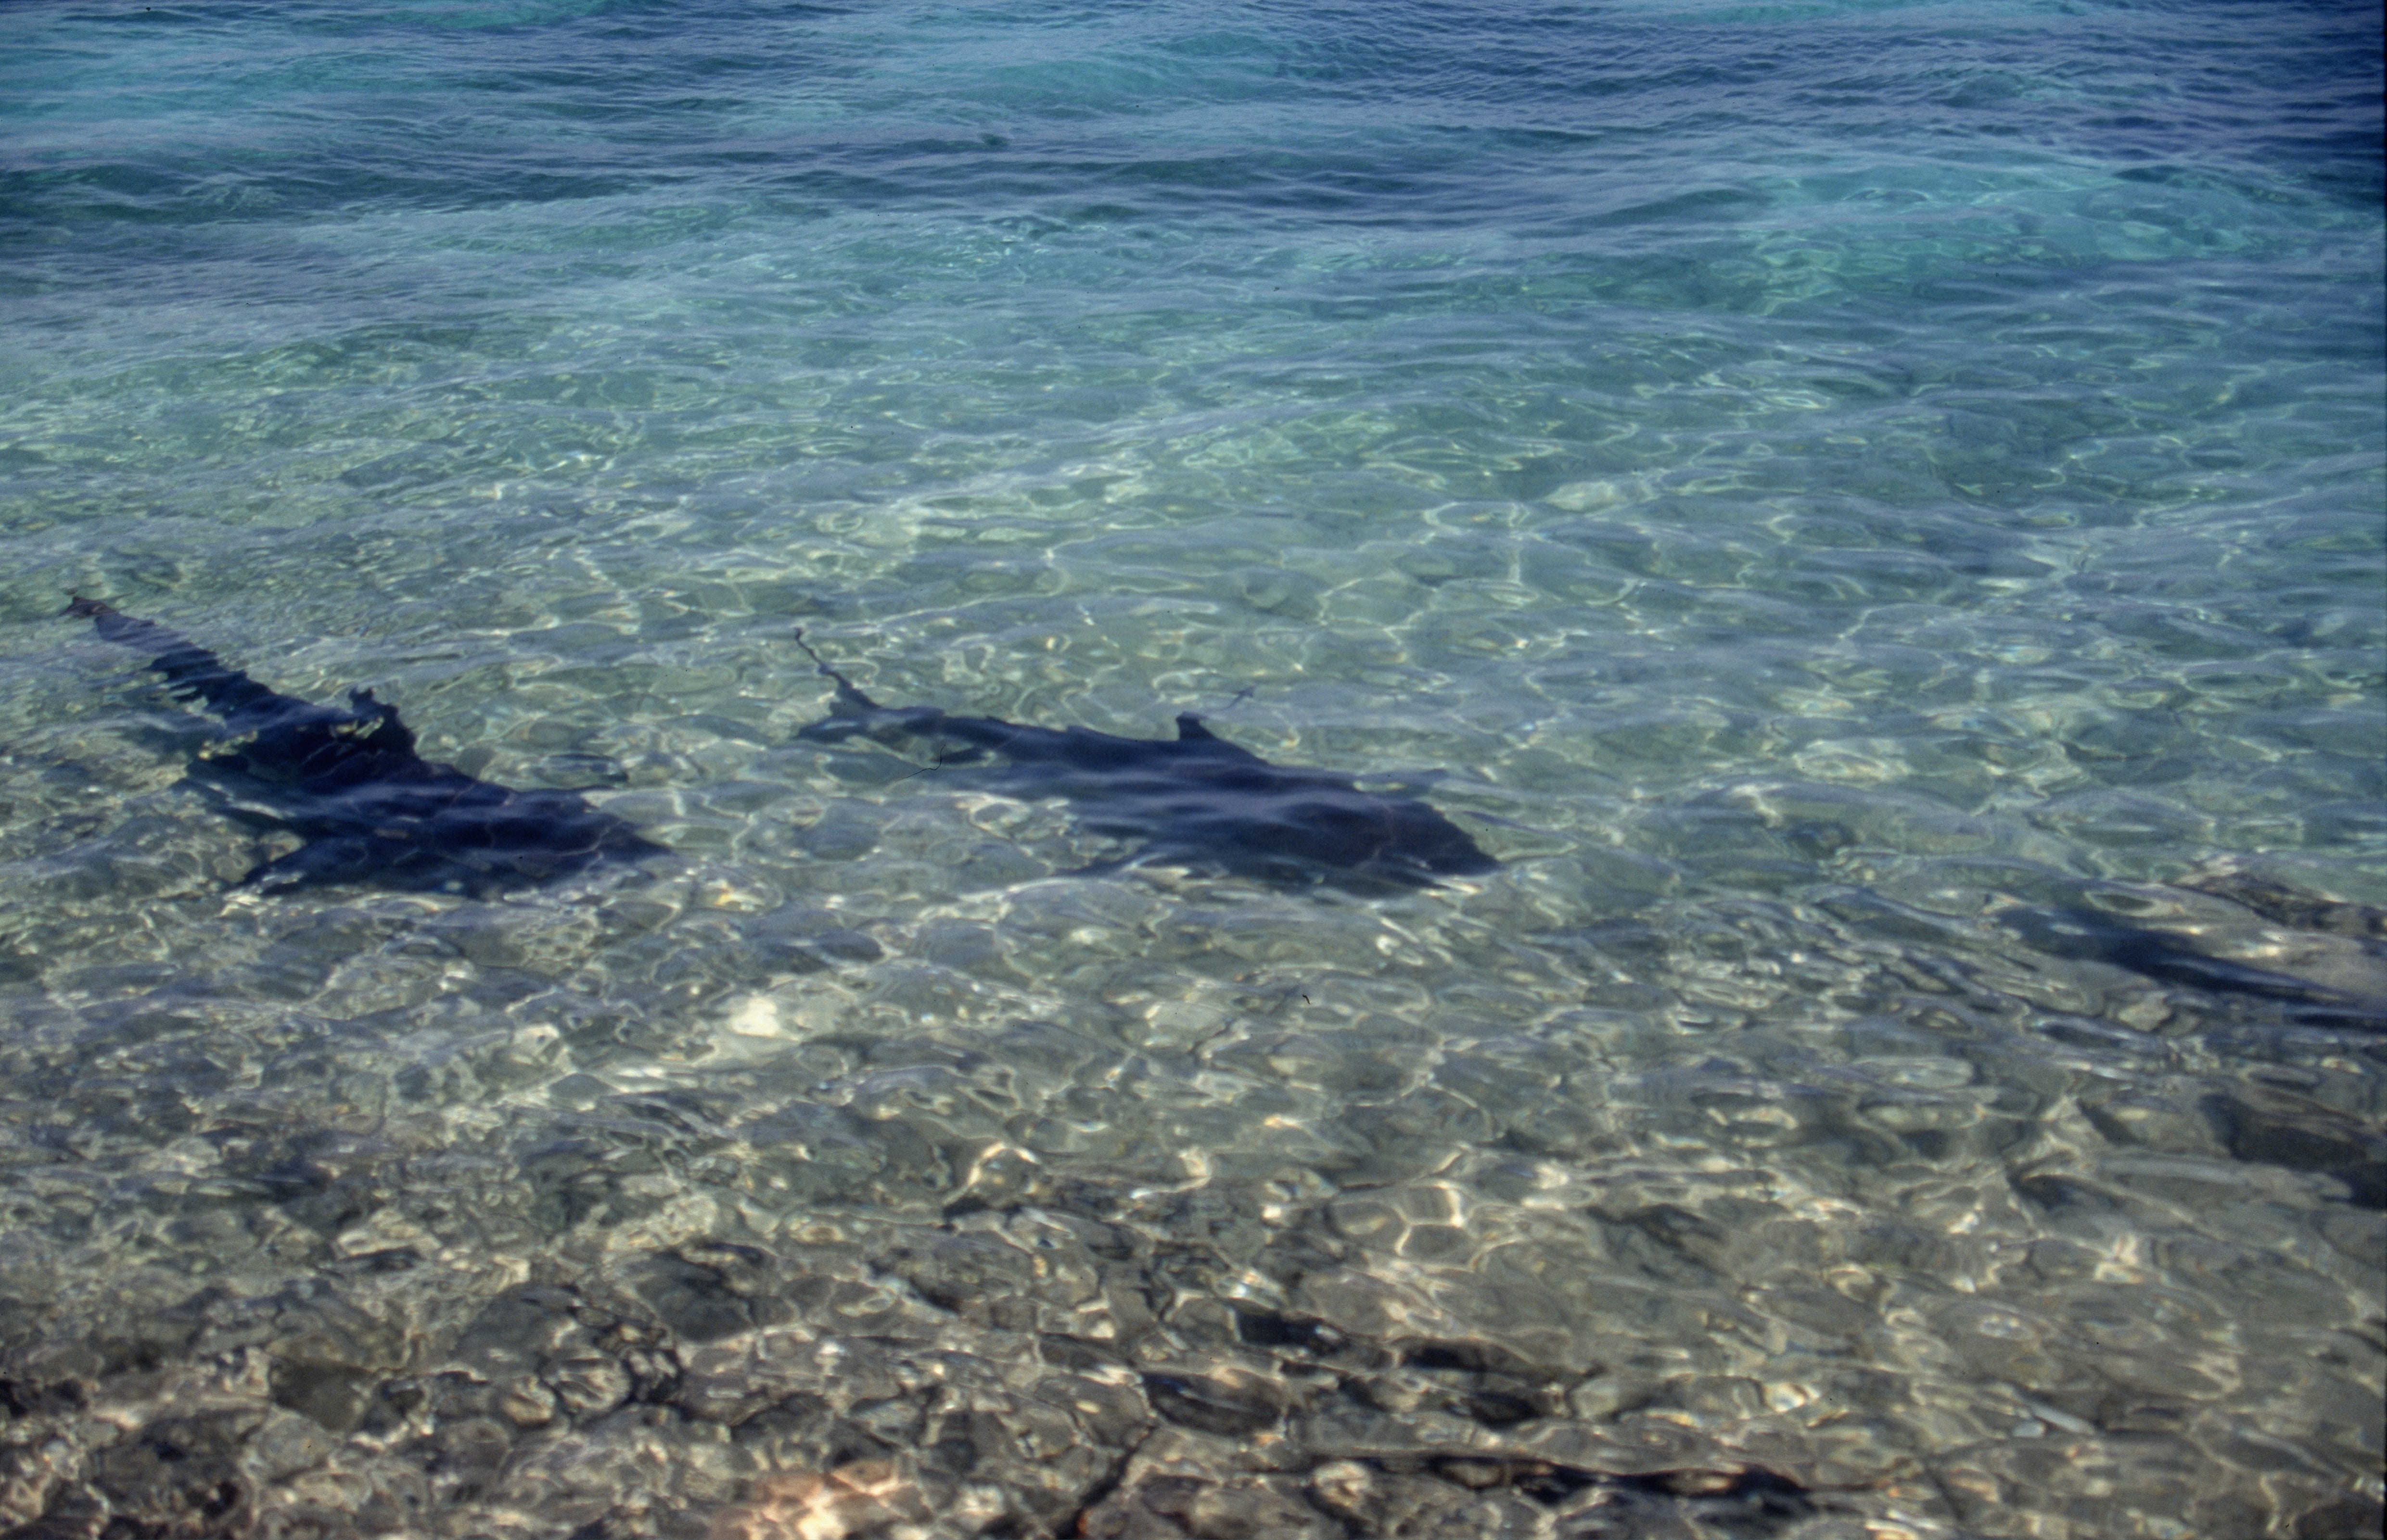 Bullenhaie vom Strand aus beobachtet (00007349)